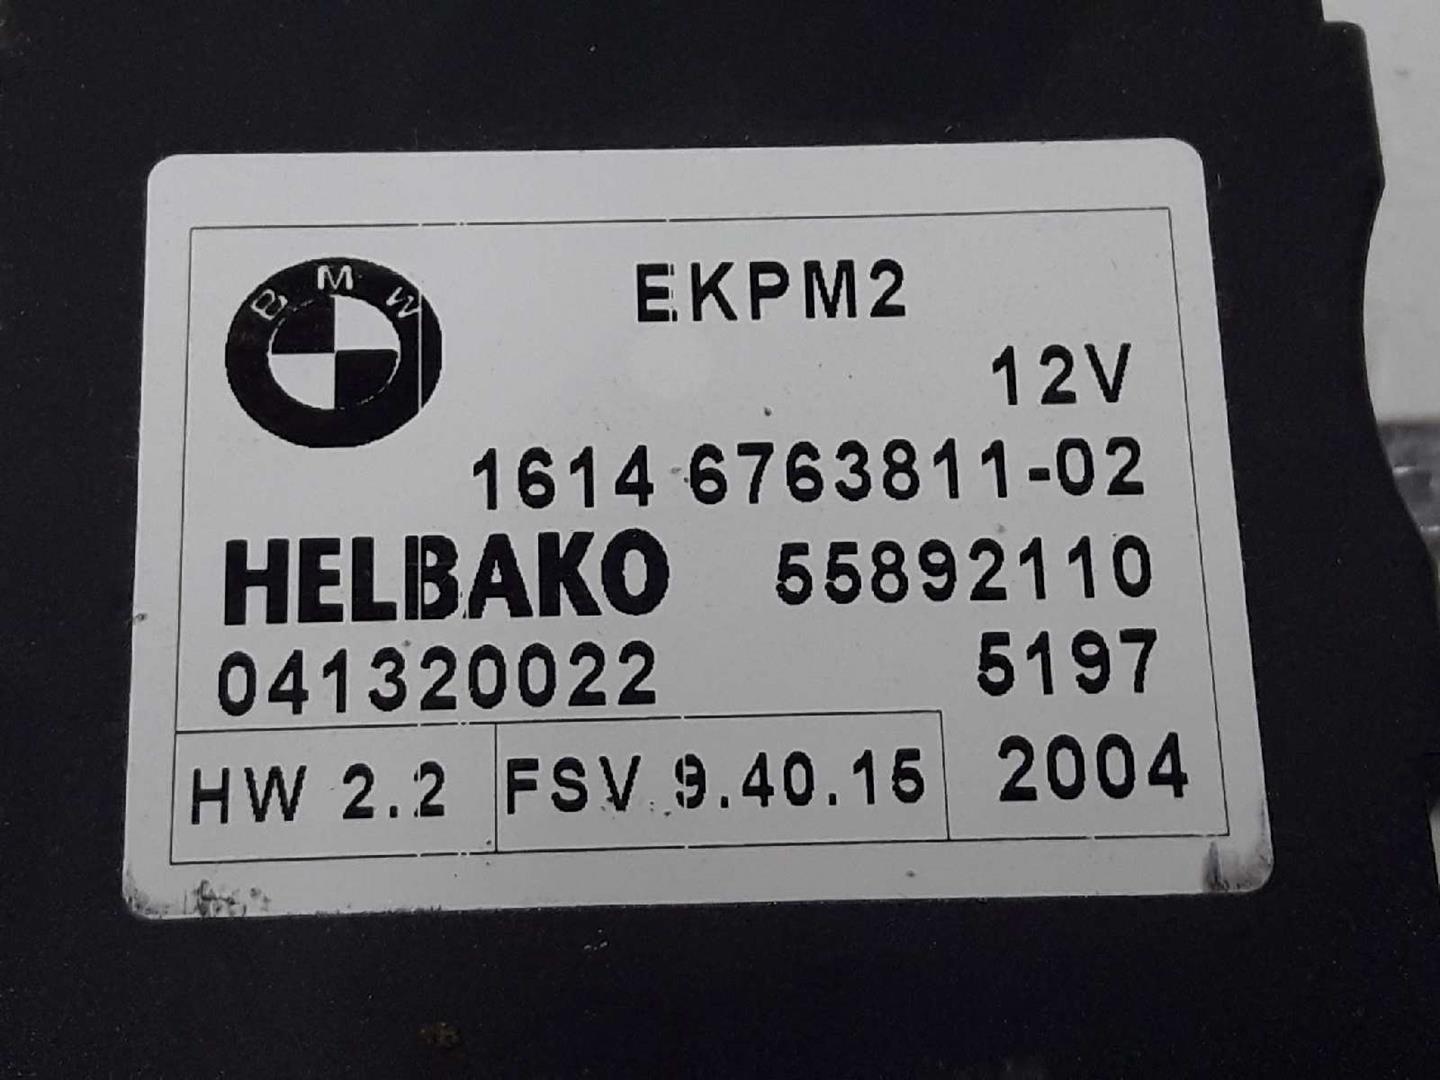 BMW 5 Series E60/E61 (2003-2010) Kuro siurblio valdymo blokas(EKPS) 16146763811, 55892110041320022, 16147229173 19686146